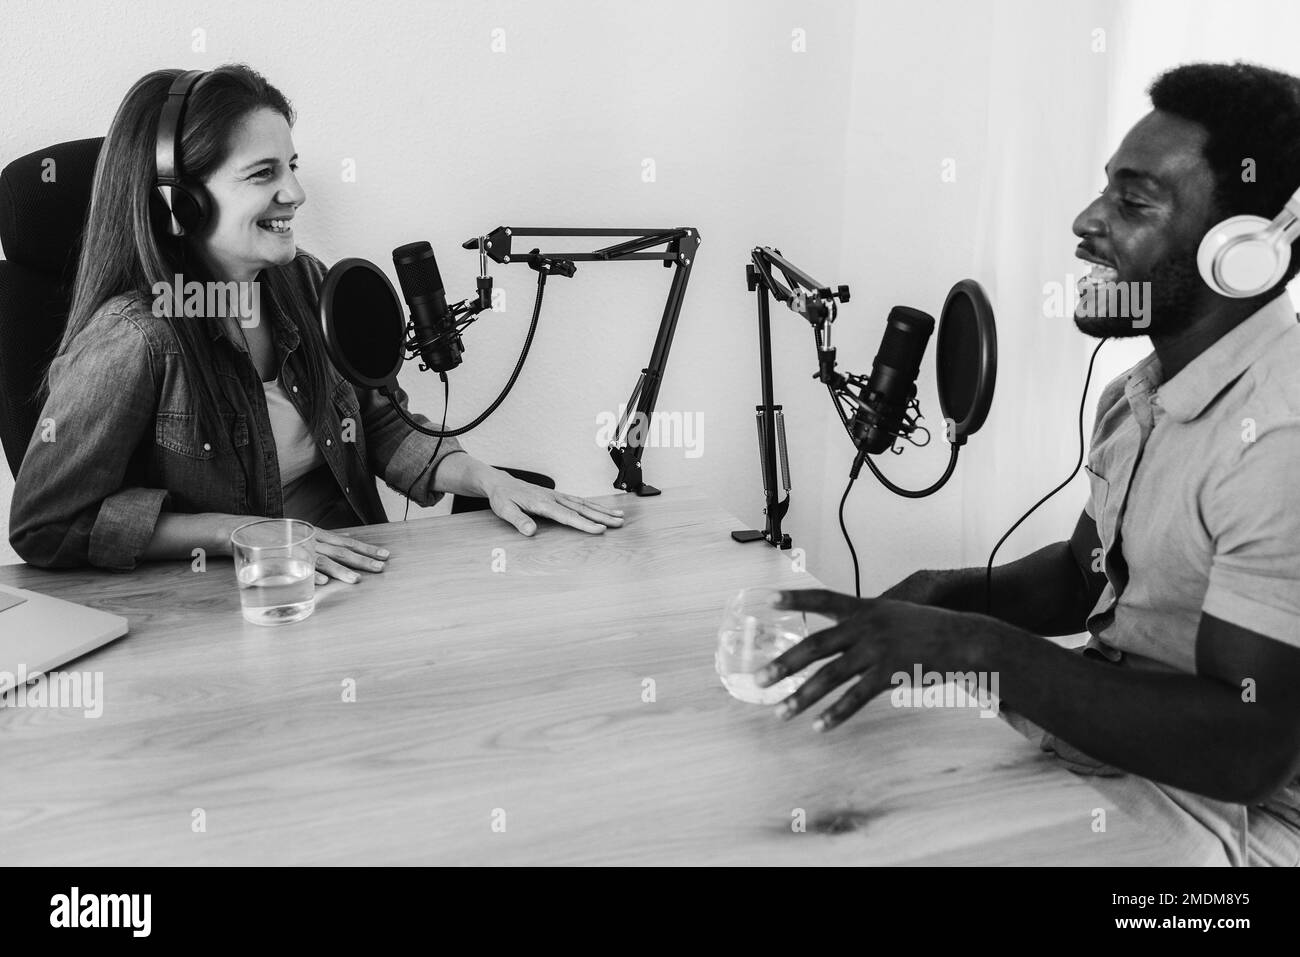 Le podcast en streaming est diffusé en mode multiracial dans un studio numérique - mise au point principale sur le microphone gauche - montage en noir et blanc Banque D'Images